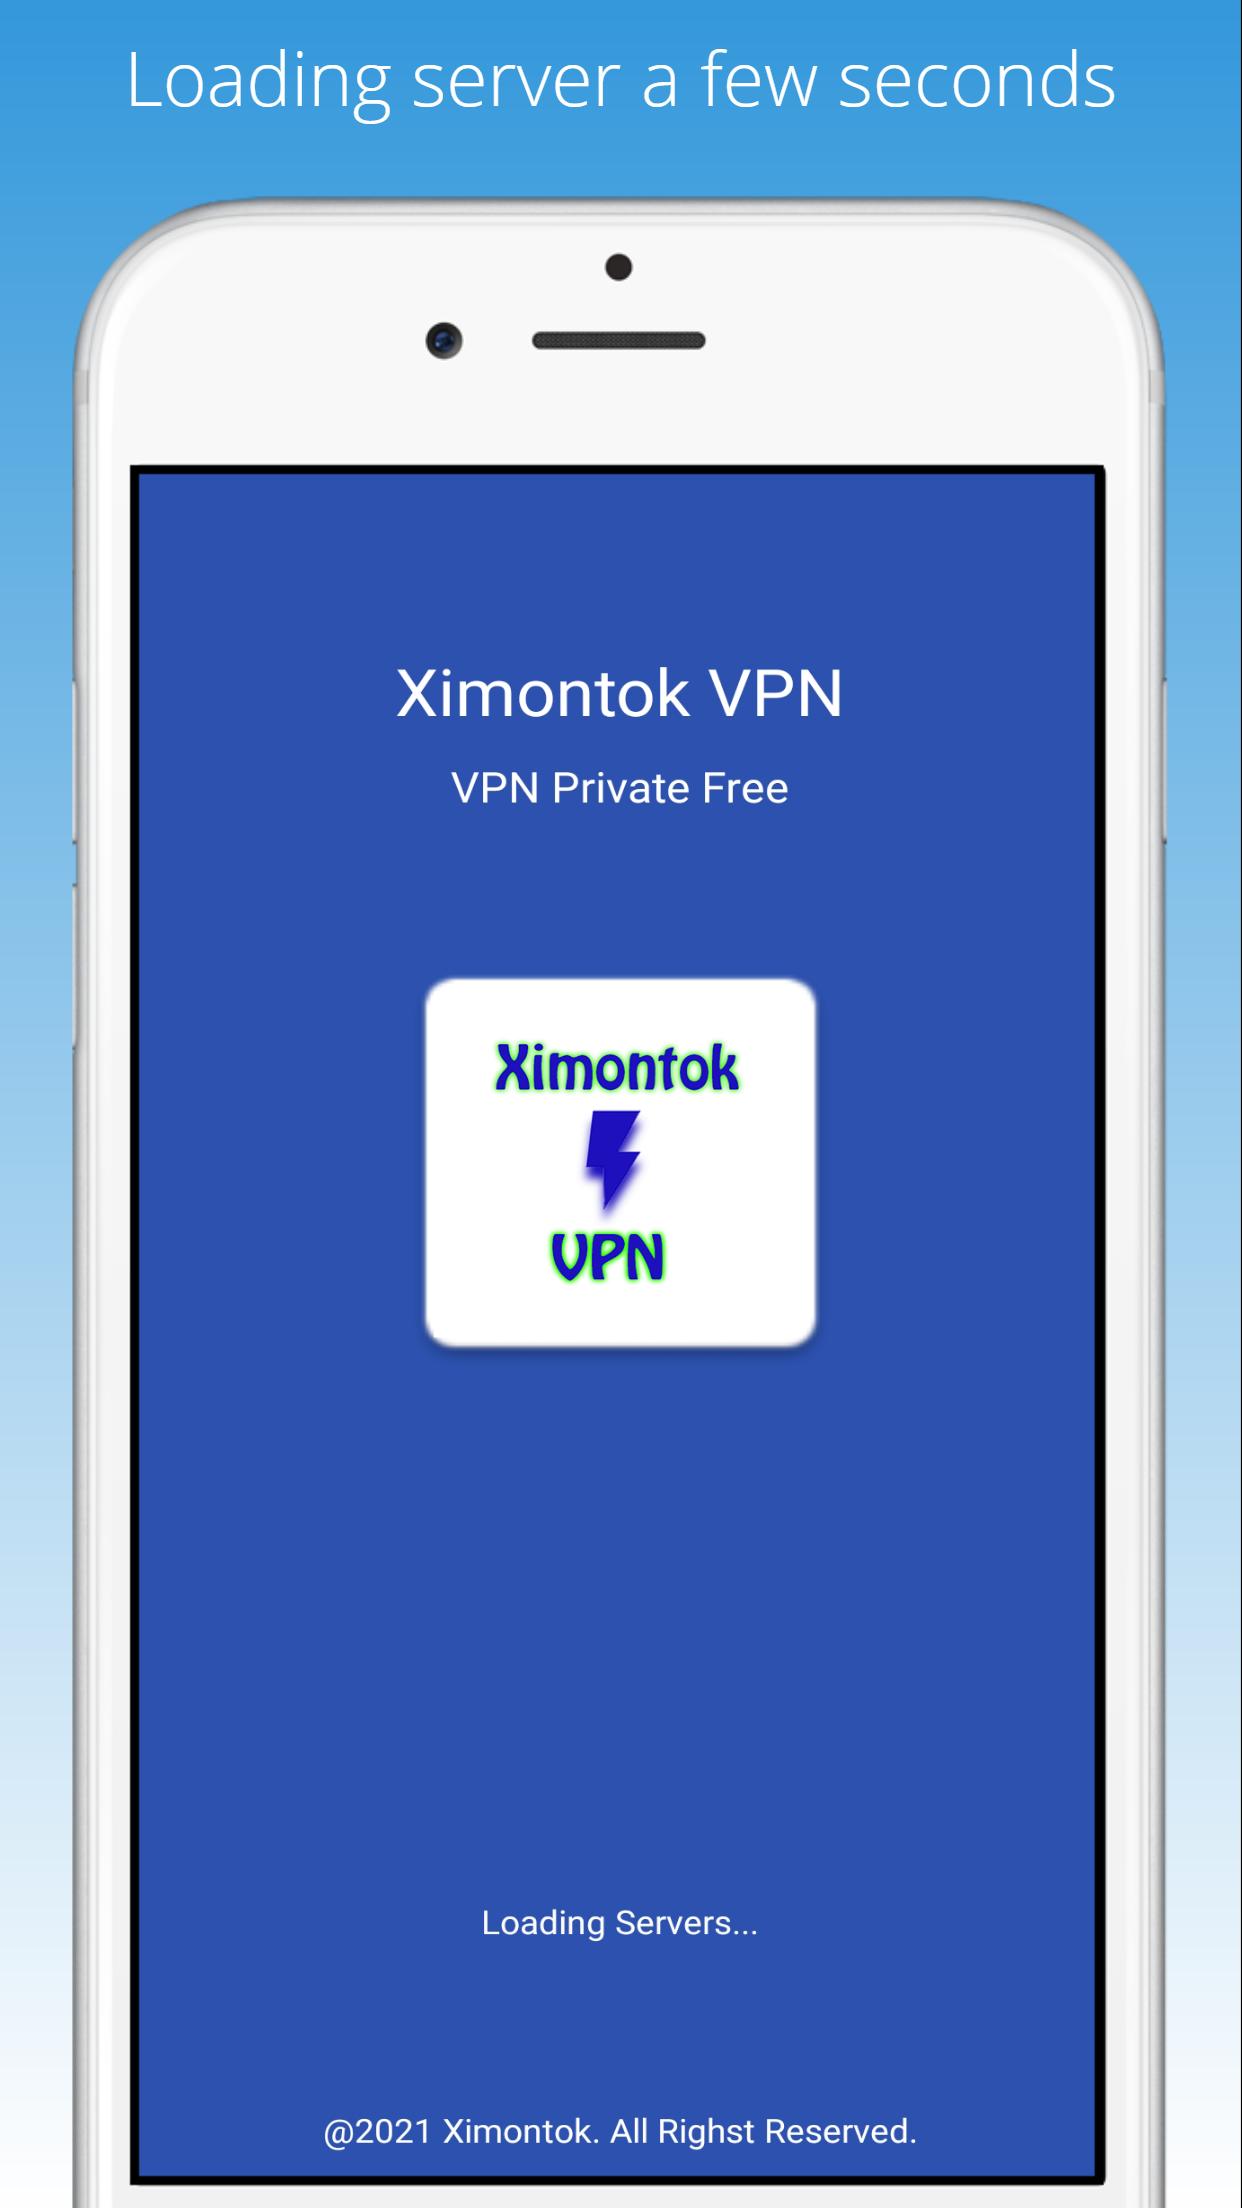 Ximontok VPN Memek - XNXX VPN Private Free APK voor Android Download